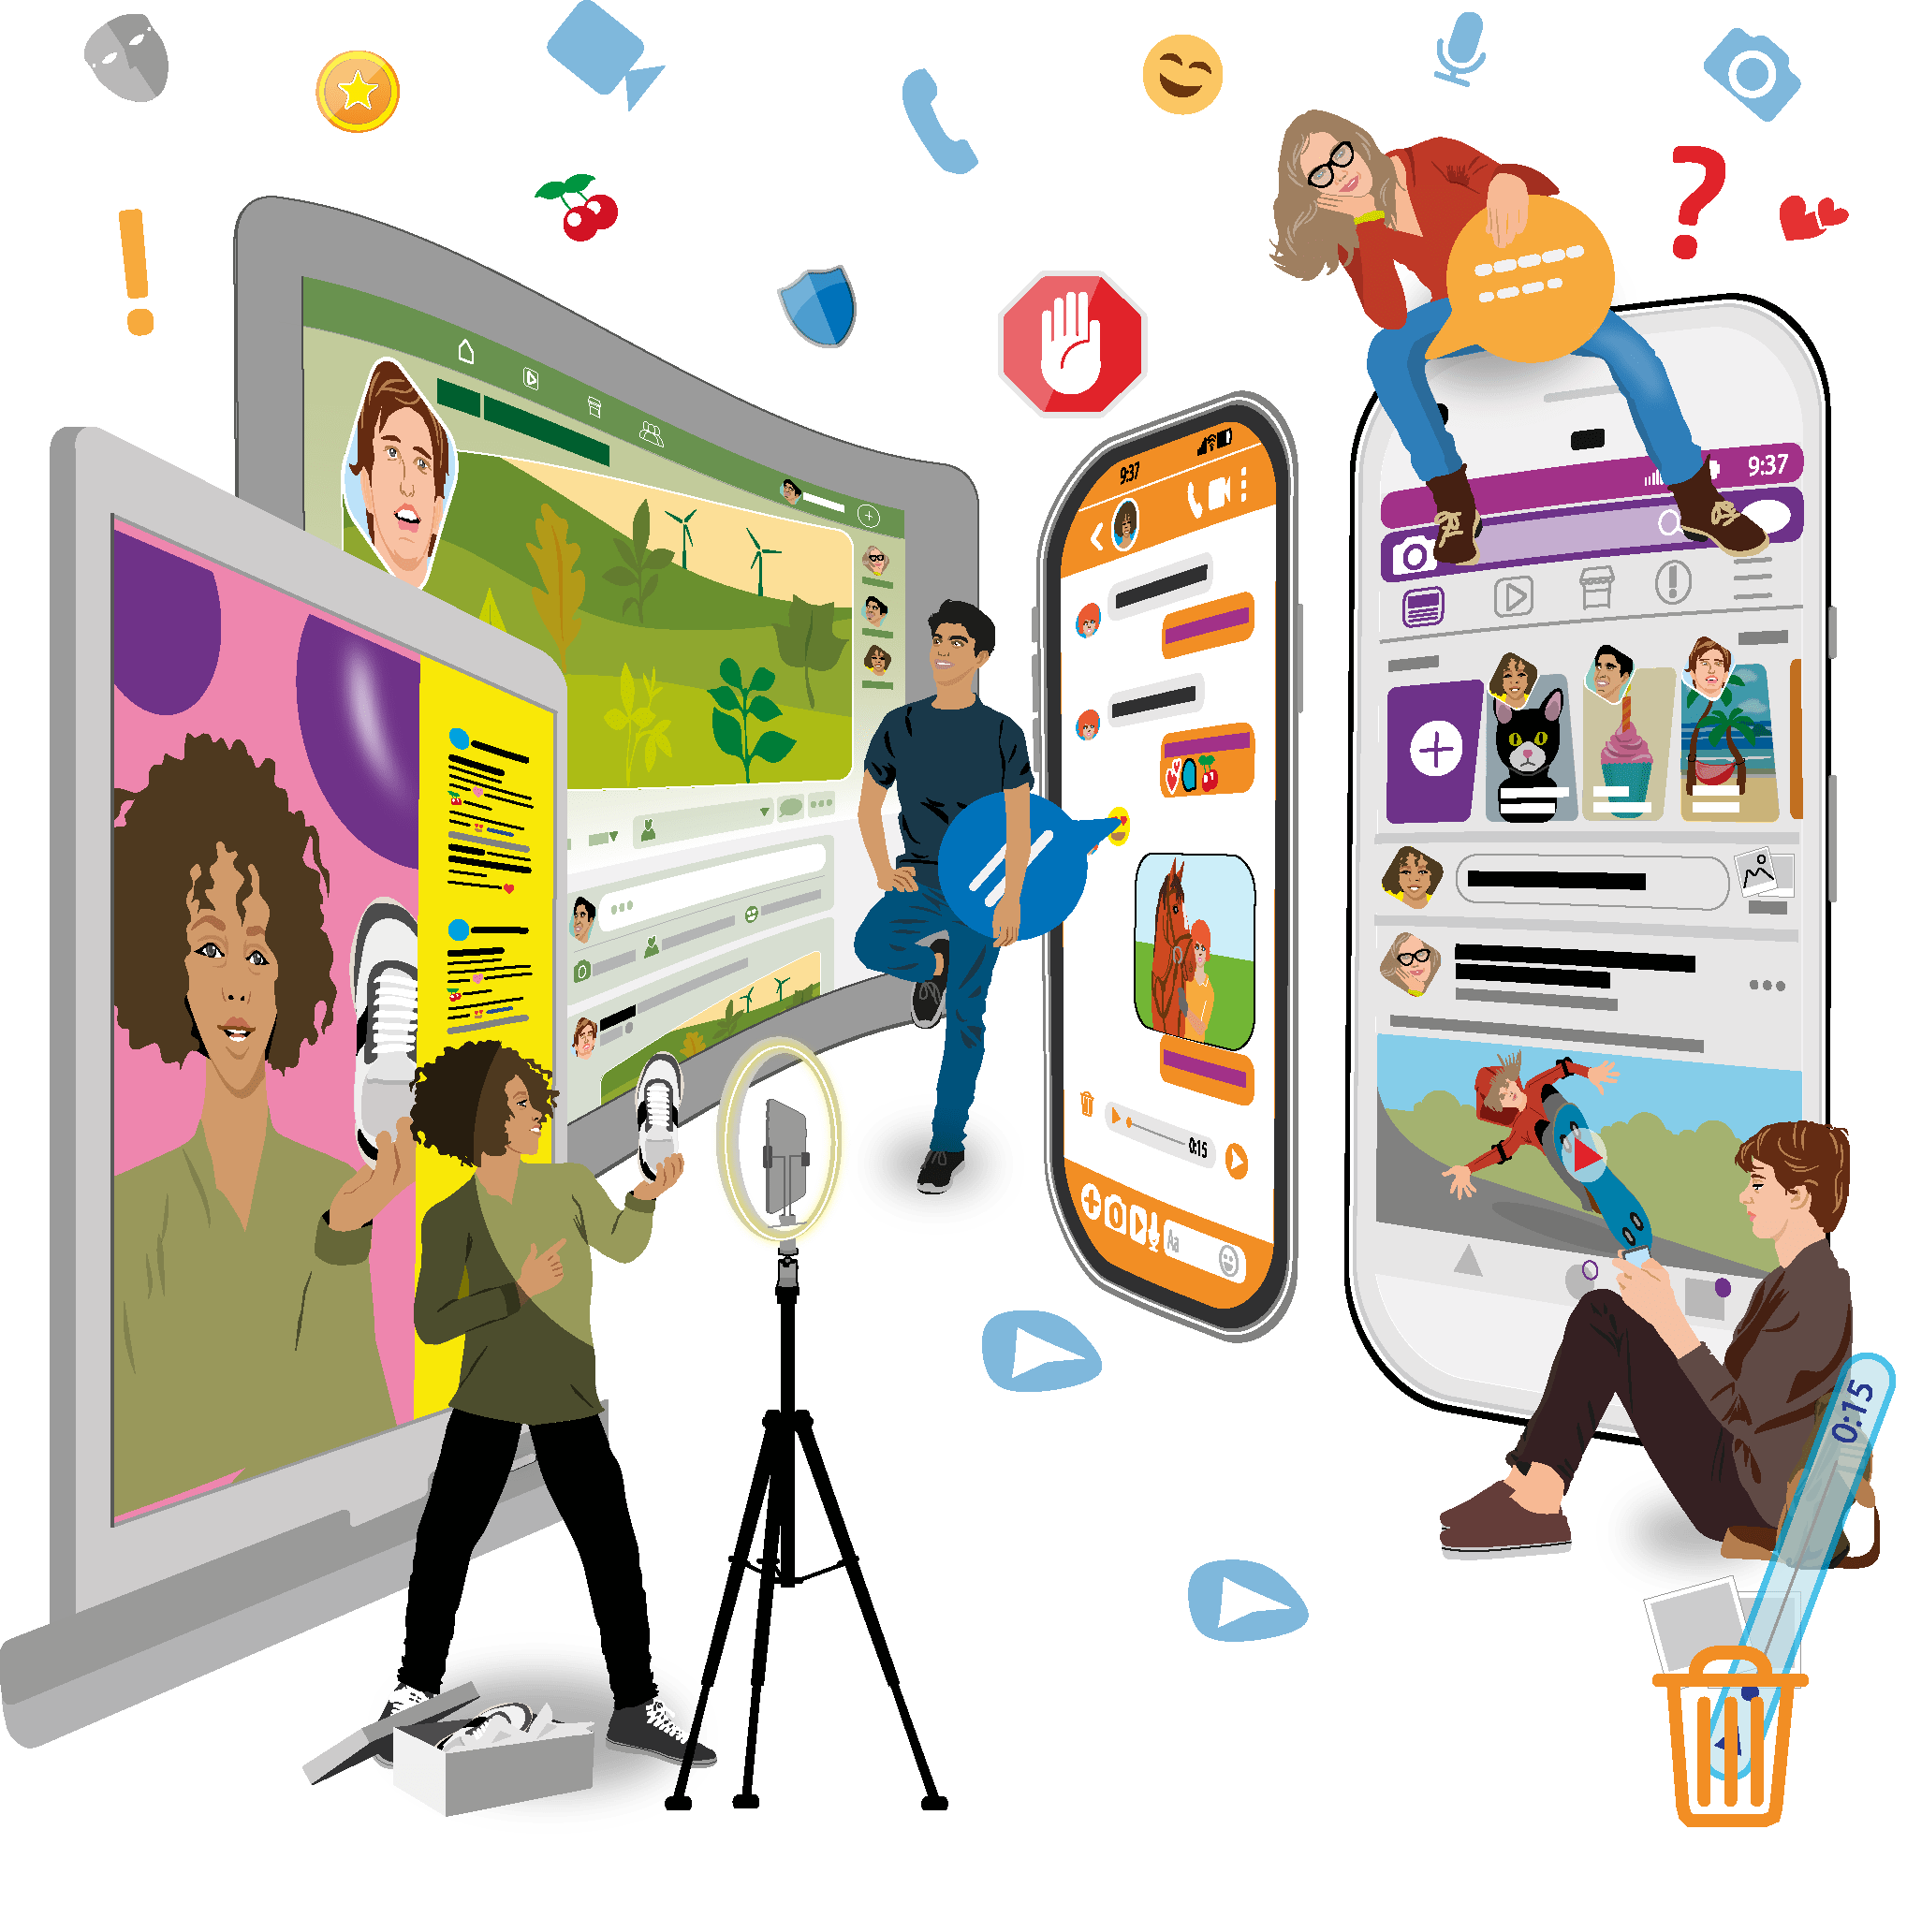 Illustration für Lernmedien aller Bildungsbereiche: Vier Jugendliche nutzen, umgeben von großflächigen Displays, verschiedene Socialmedia-Angebote.